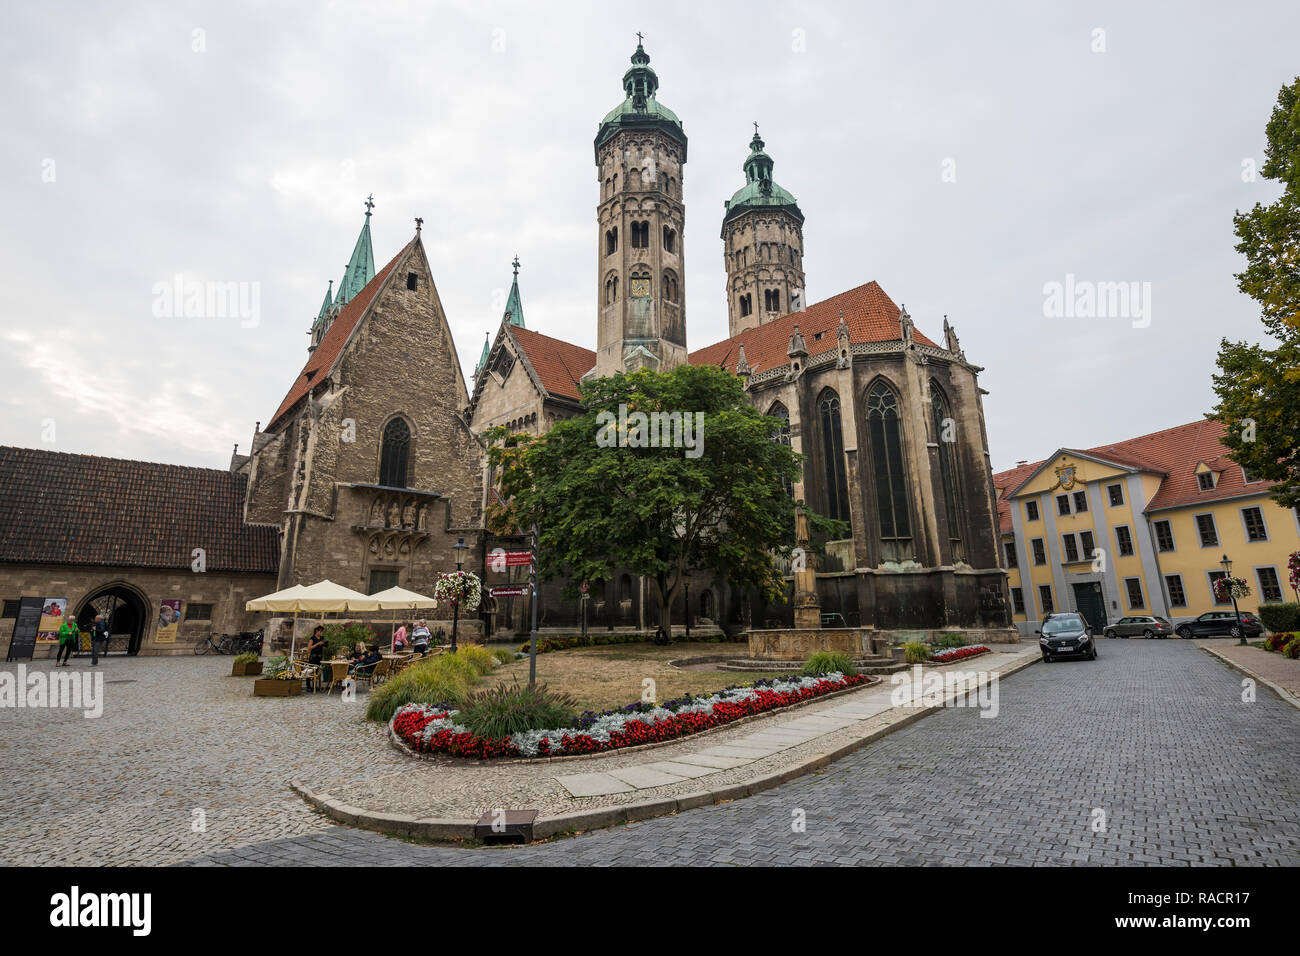 La cathédrale de Naumburg, UNESCO World Heritage Site, Naumburg, Saxe-Anhalt, Allemagne, Europe Banque D'Images